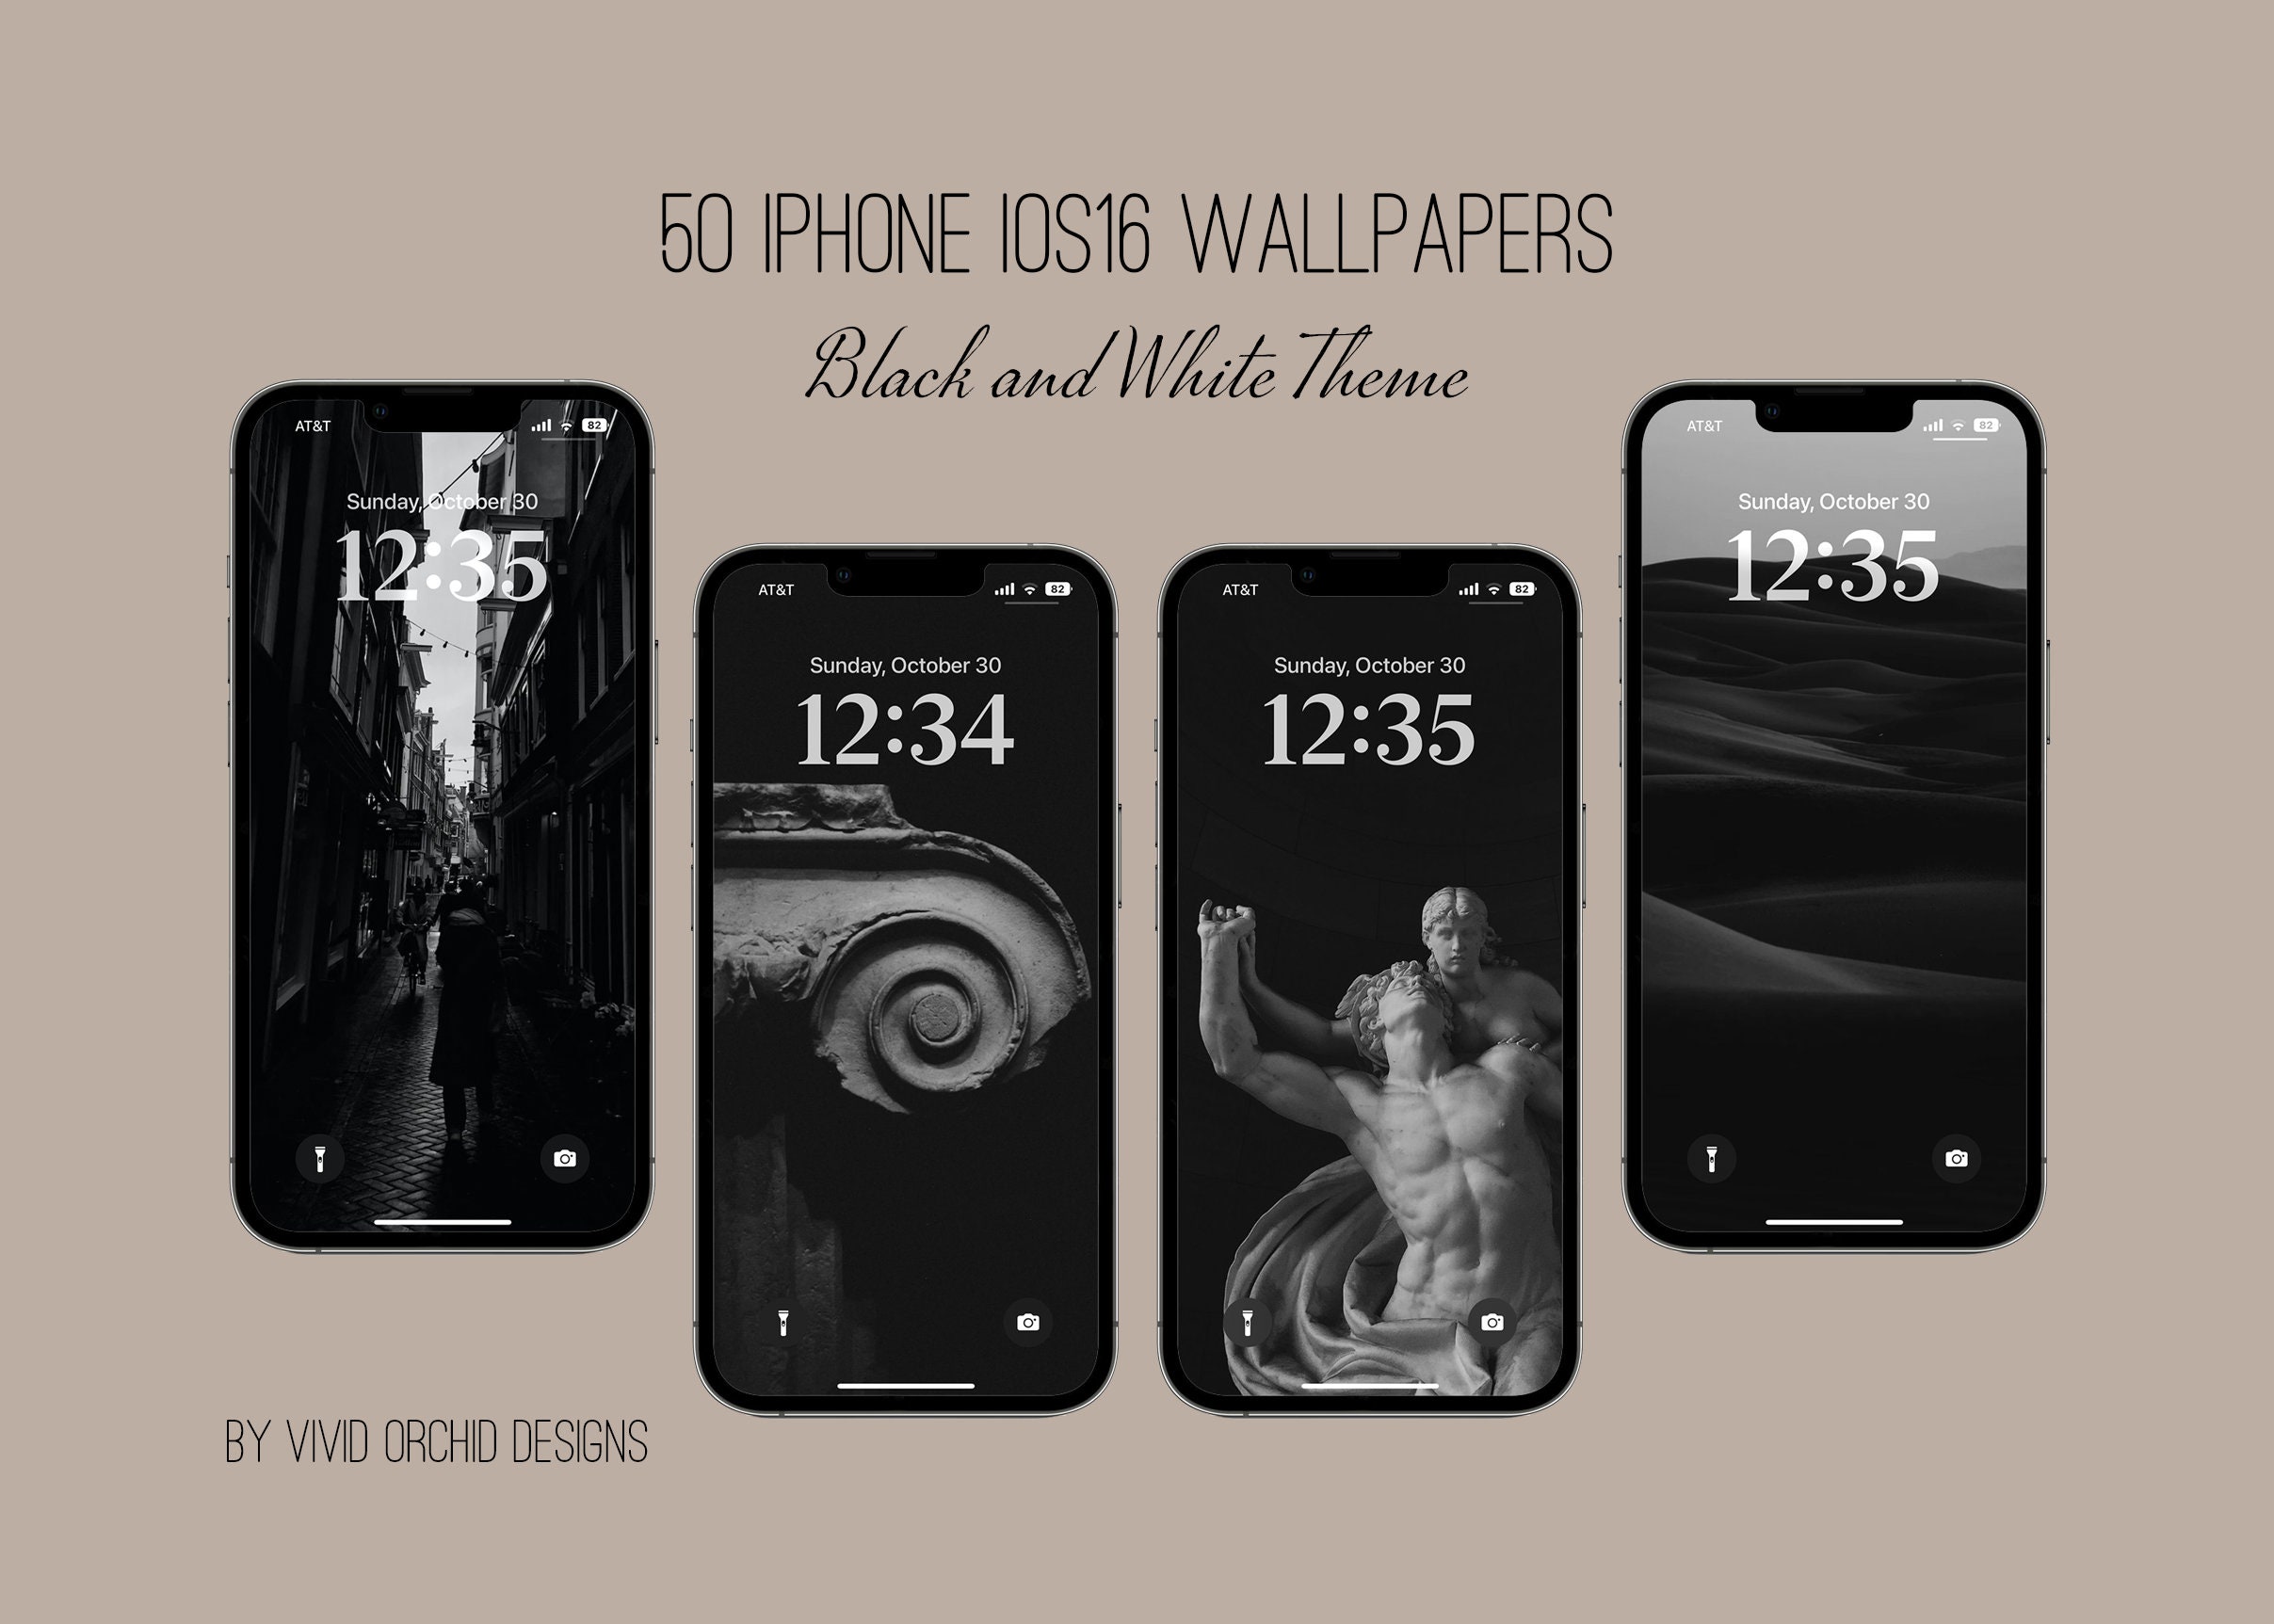 Với bộ hình nền đen trắng Iphone Ios16 Black Lock, bạn có thể trang trí cho màn hình của thiết bị của mình một cách đơn giản nhưng đầy tinh tế. Những hình ảnh với gam màu đen trắng xứng đáng là một chất liệu vô cùng lý tưởng để trang trí cho smartphone của bạn. Hãy tải ngay bộ hình nền đen trắng Iphone Ios16 Black Lock để trang trí cho màn hình của mình nhé!